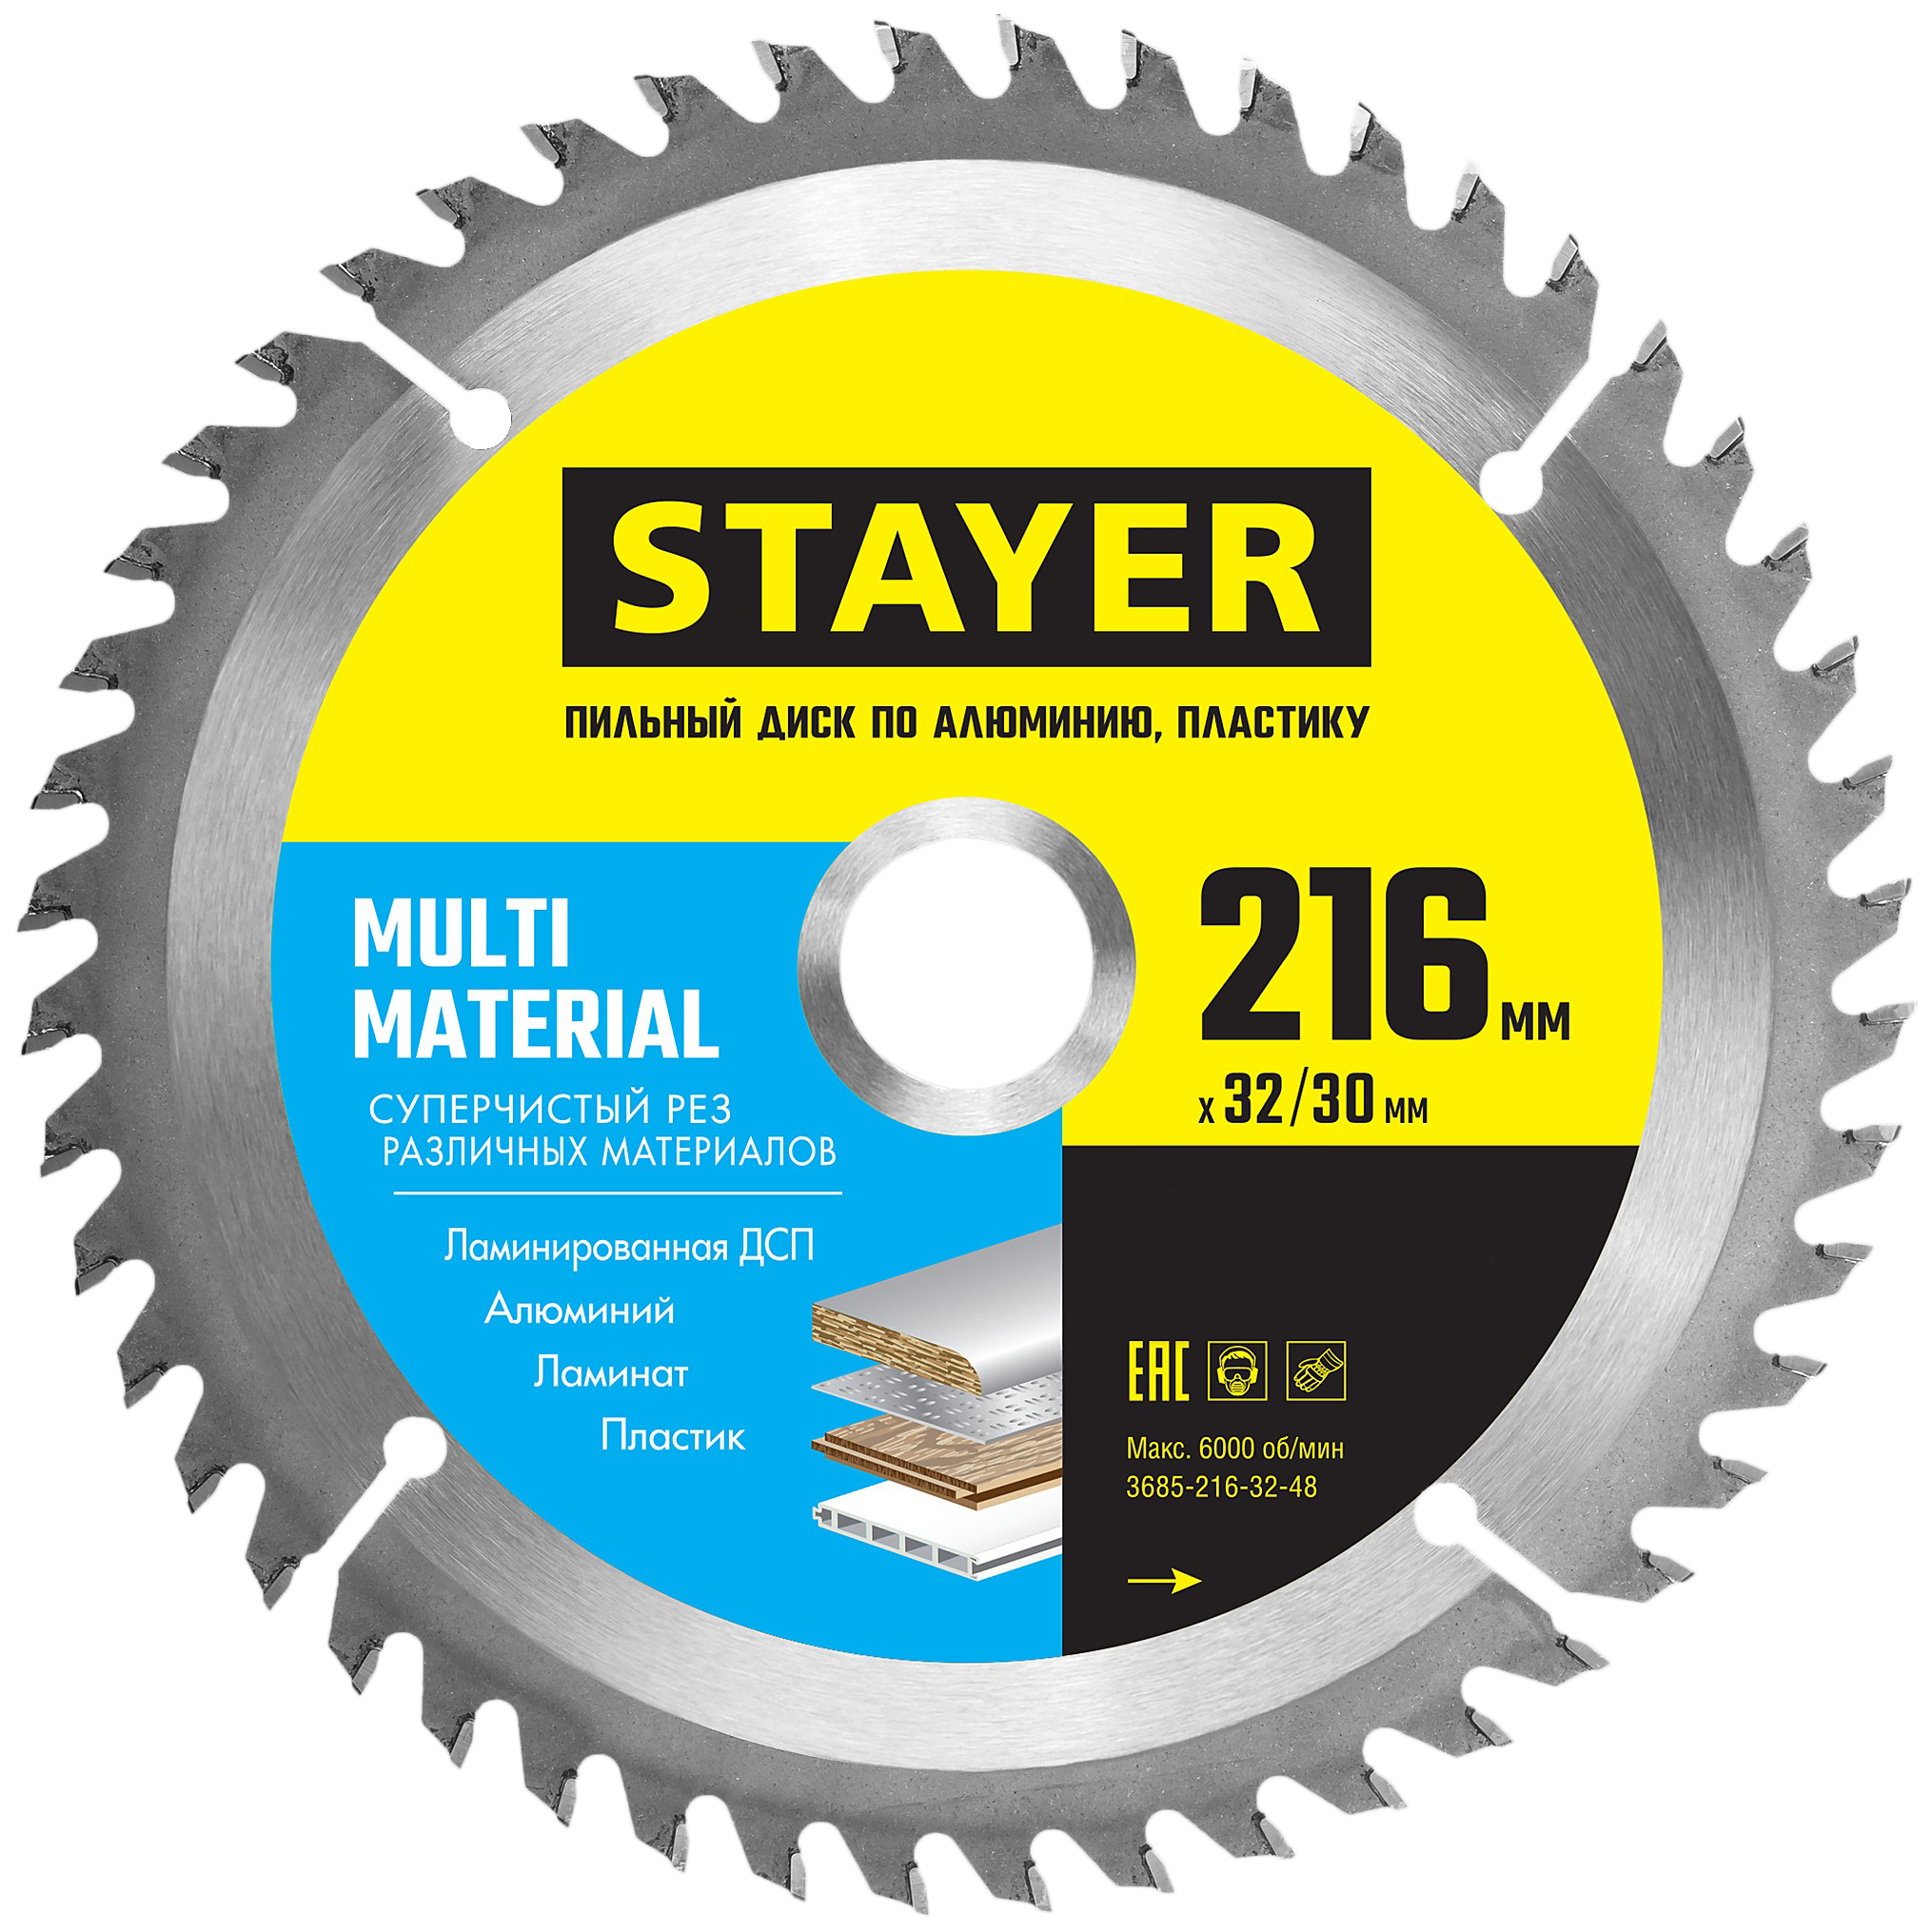 Диск Stayer MULTI MATERIAL 216х32/30мм 64Т, диск пильный по алюминию, супер чистый рез